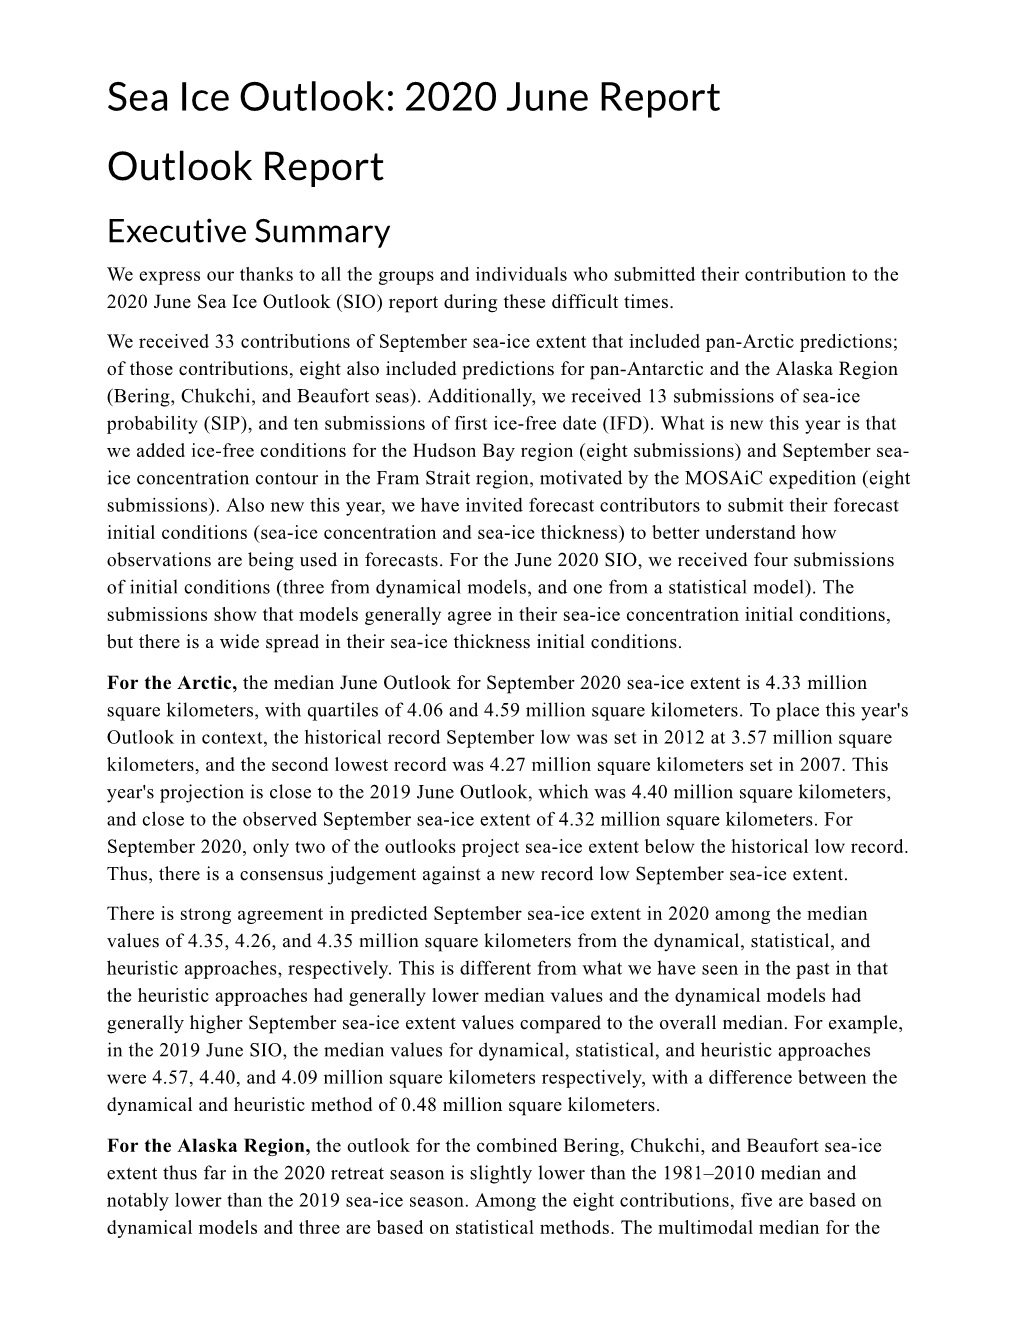 Download June 2020 Sea Ice Outlook Report